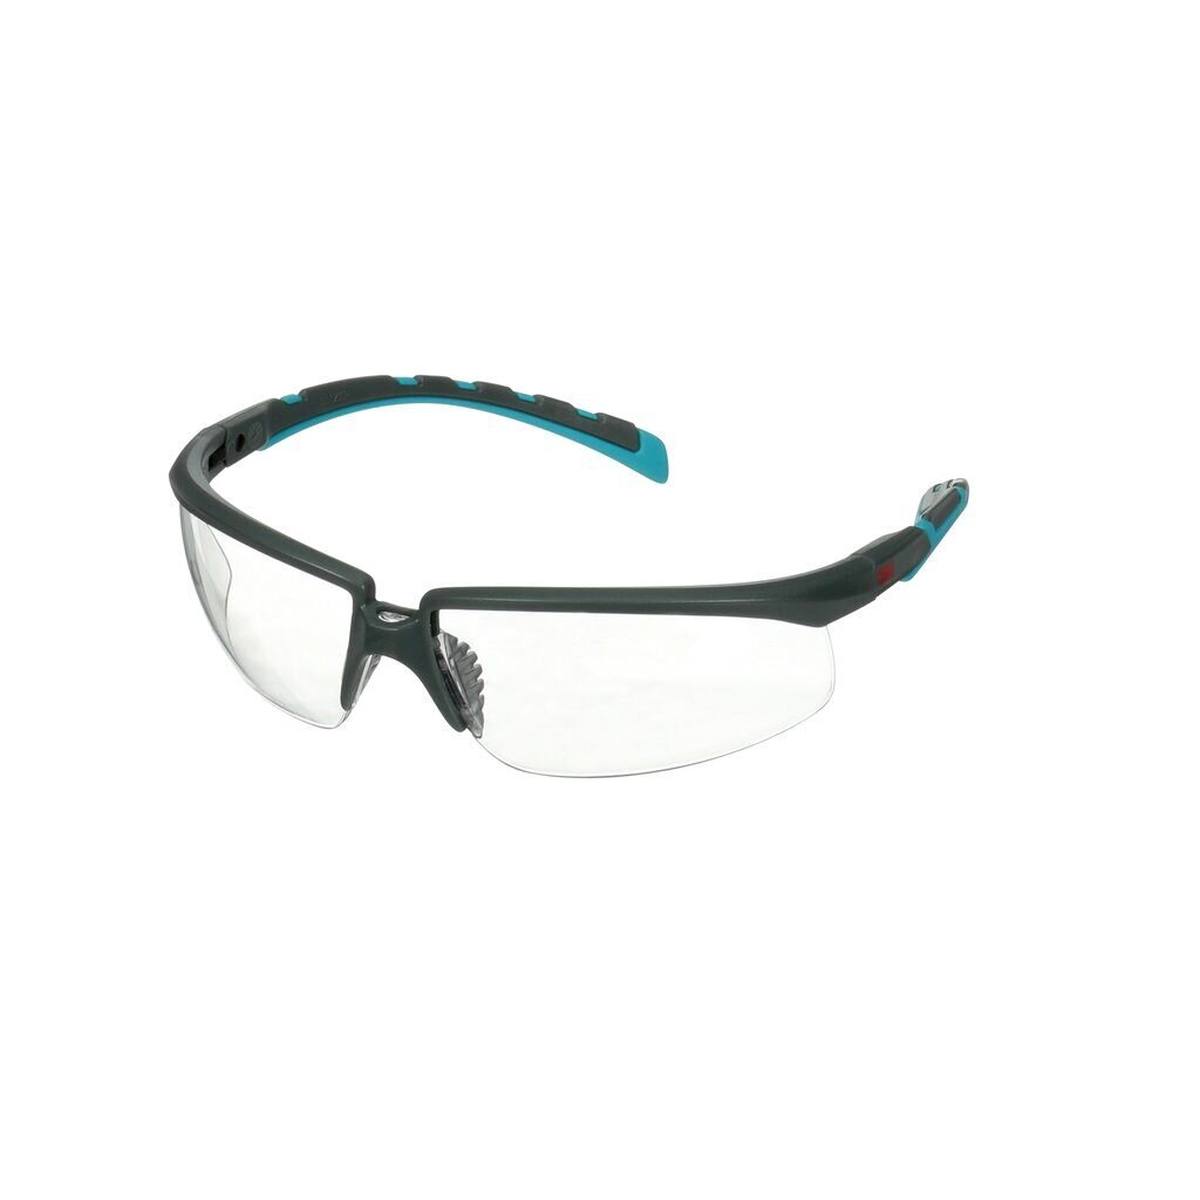 3M Solus 2000 veiligheidsbril, blauw/grijze veren, anticondens/krasbestendig, helder glas, in hoek verstelbaar, S2001AF-BLU-E